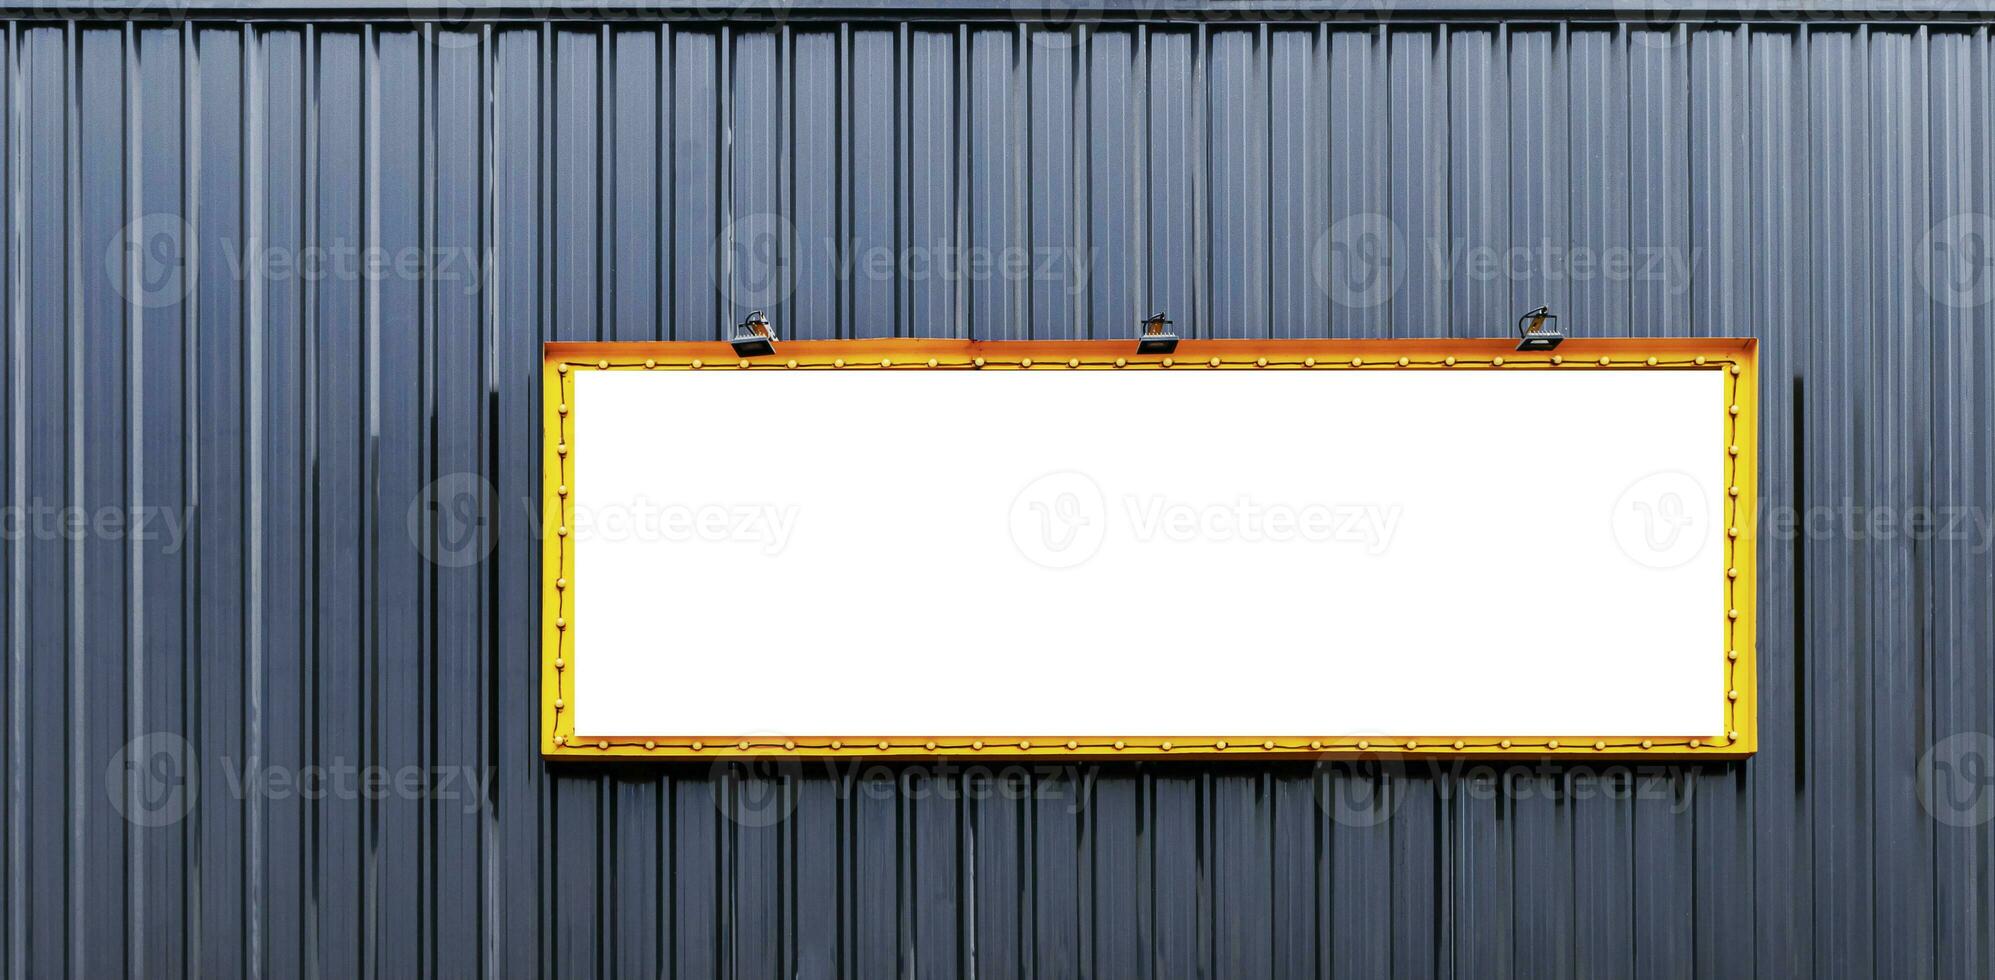 burlarse de arriba amarillo imagen marco cartelera con Mancha ligero y ligero bombillas alrededor en negro pared edificio foto